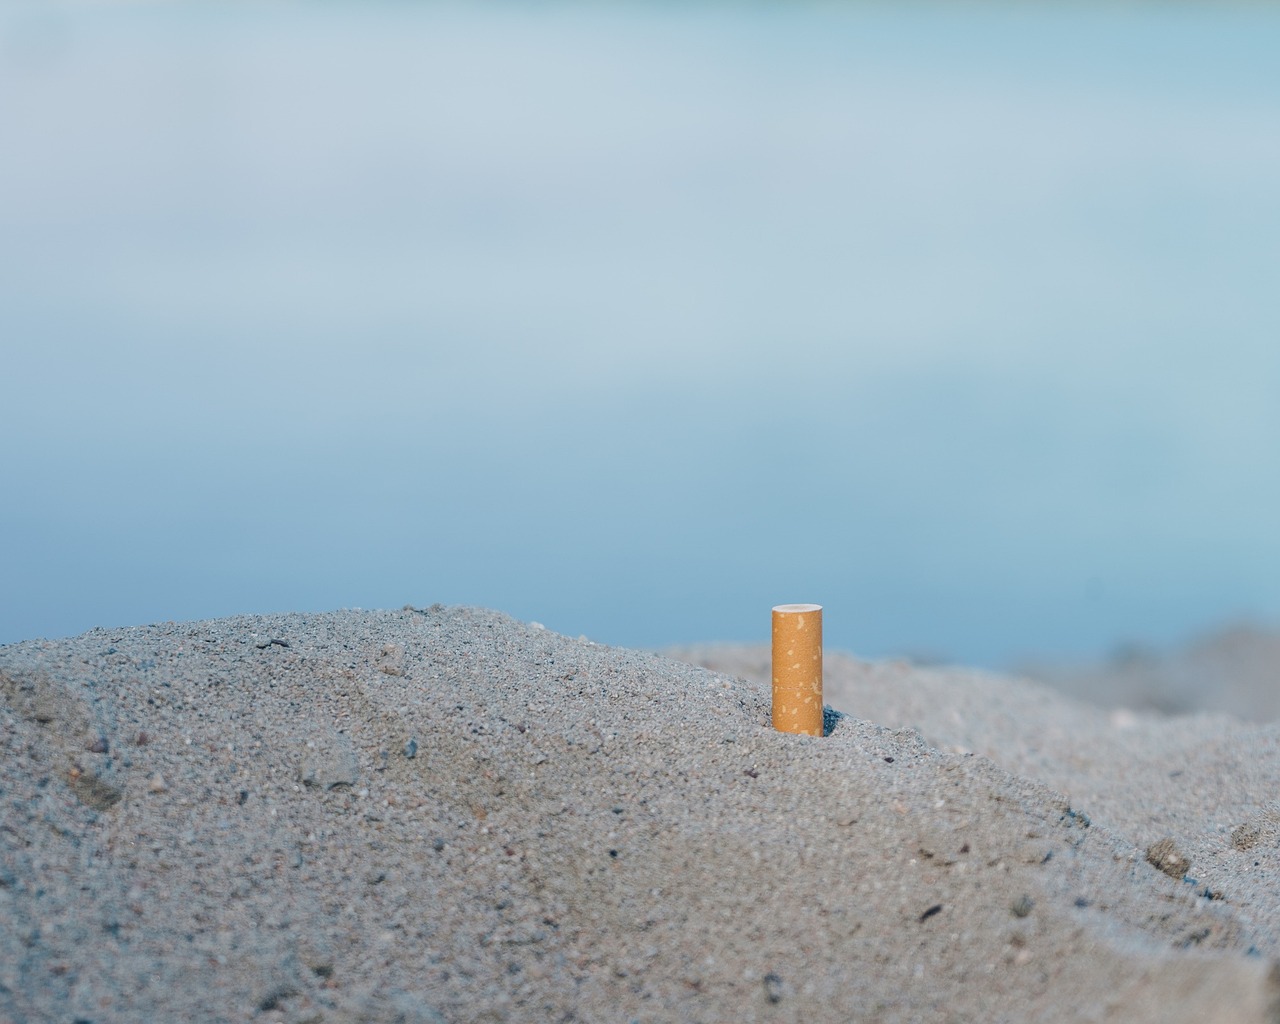 https://trendnieuws.nl/roken-op-het-strand-moet-stoppen-wij-willen-een-verbod/